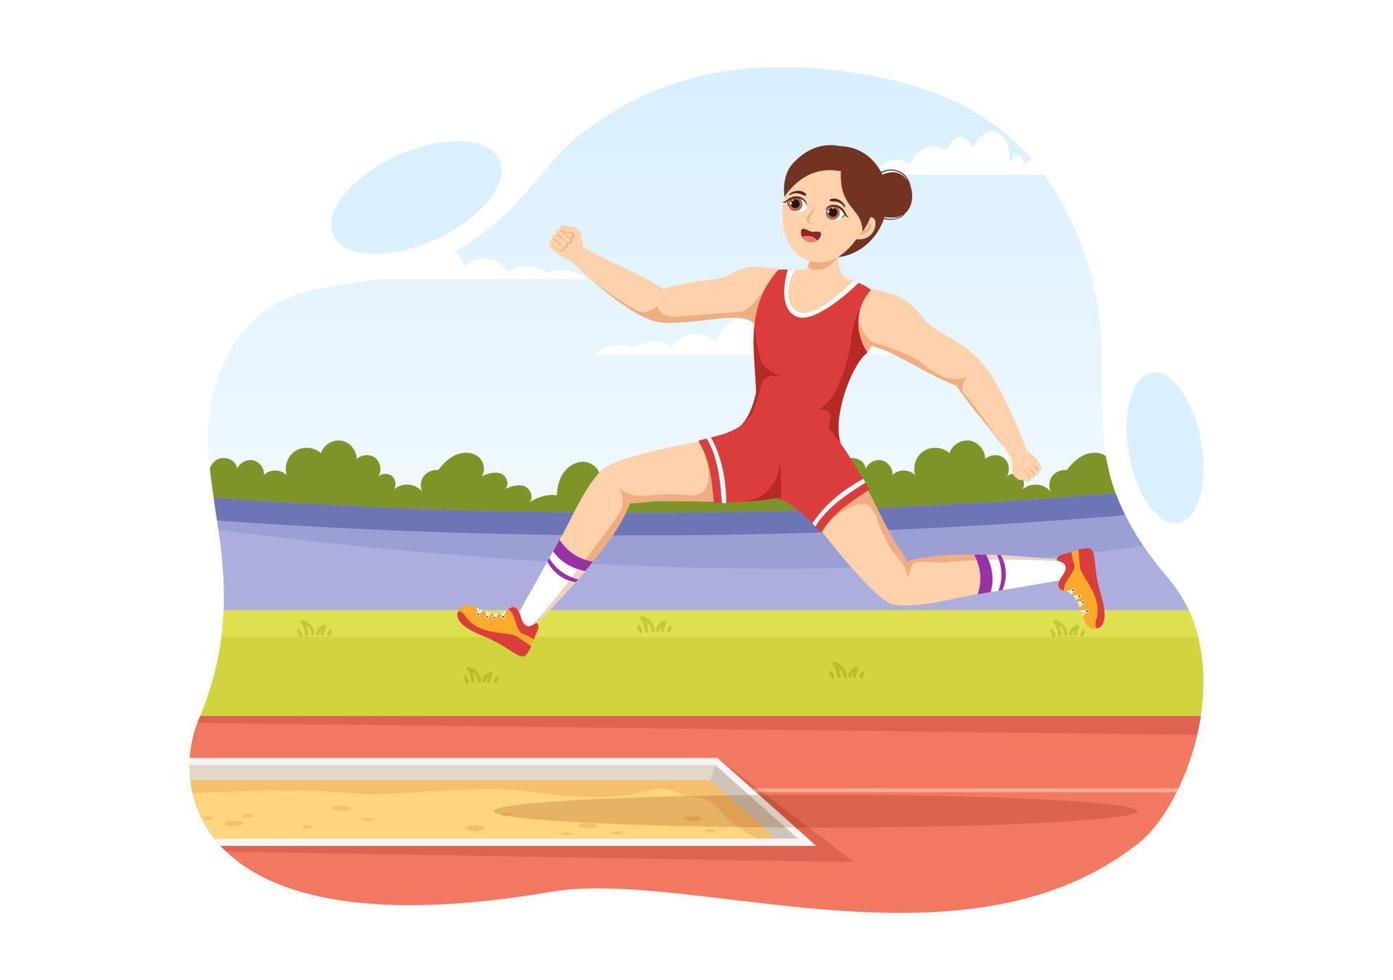 ilustração de salto em comprimento com atleta fazendo saltos na caixa de areia para banner da web ou página inicial em modelos desenhados à mão de desenhos animados planos de campeonato esportivo vetor